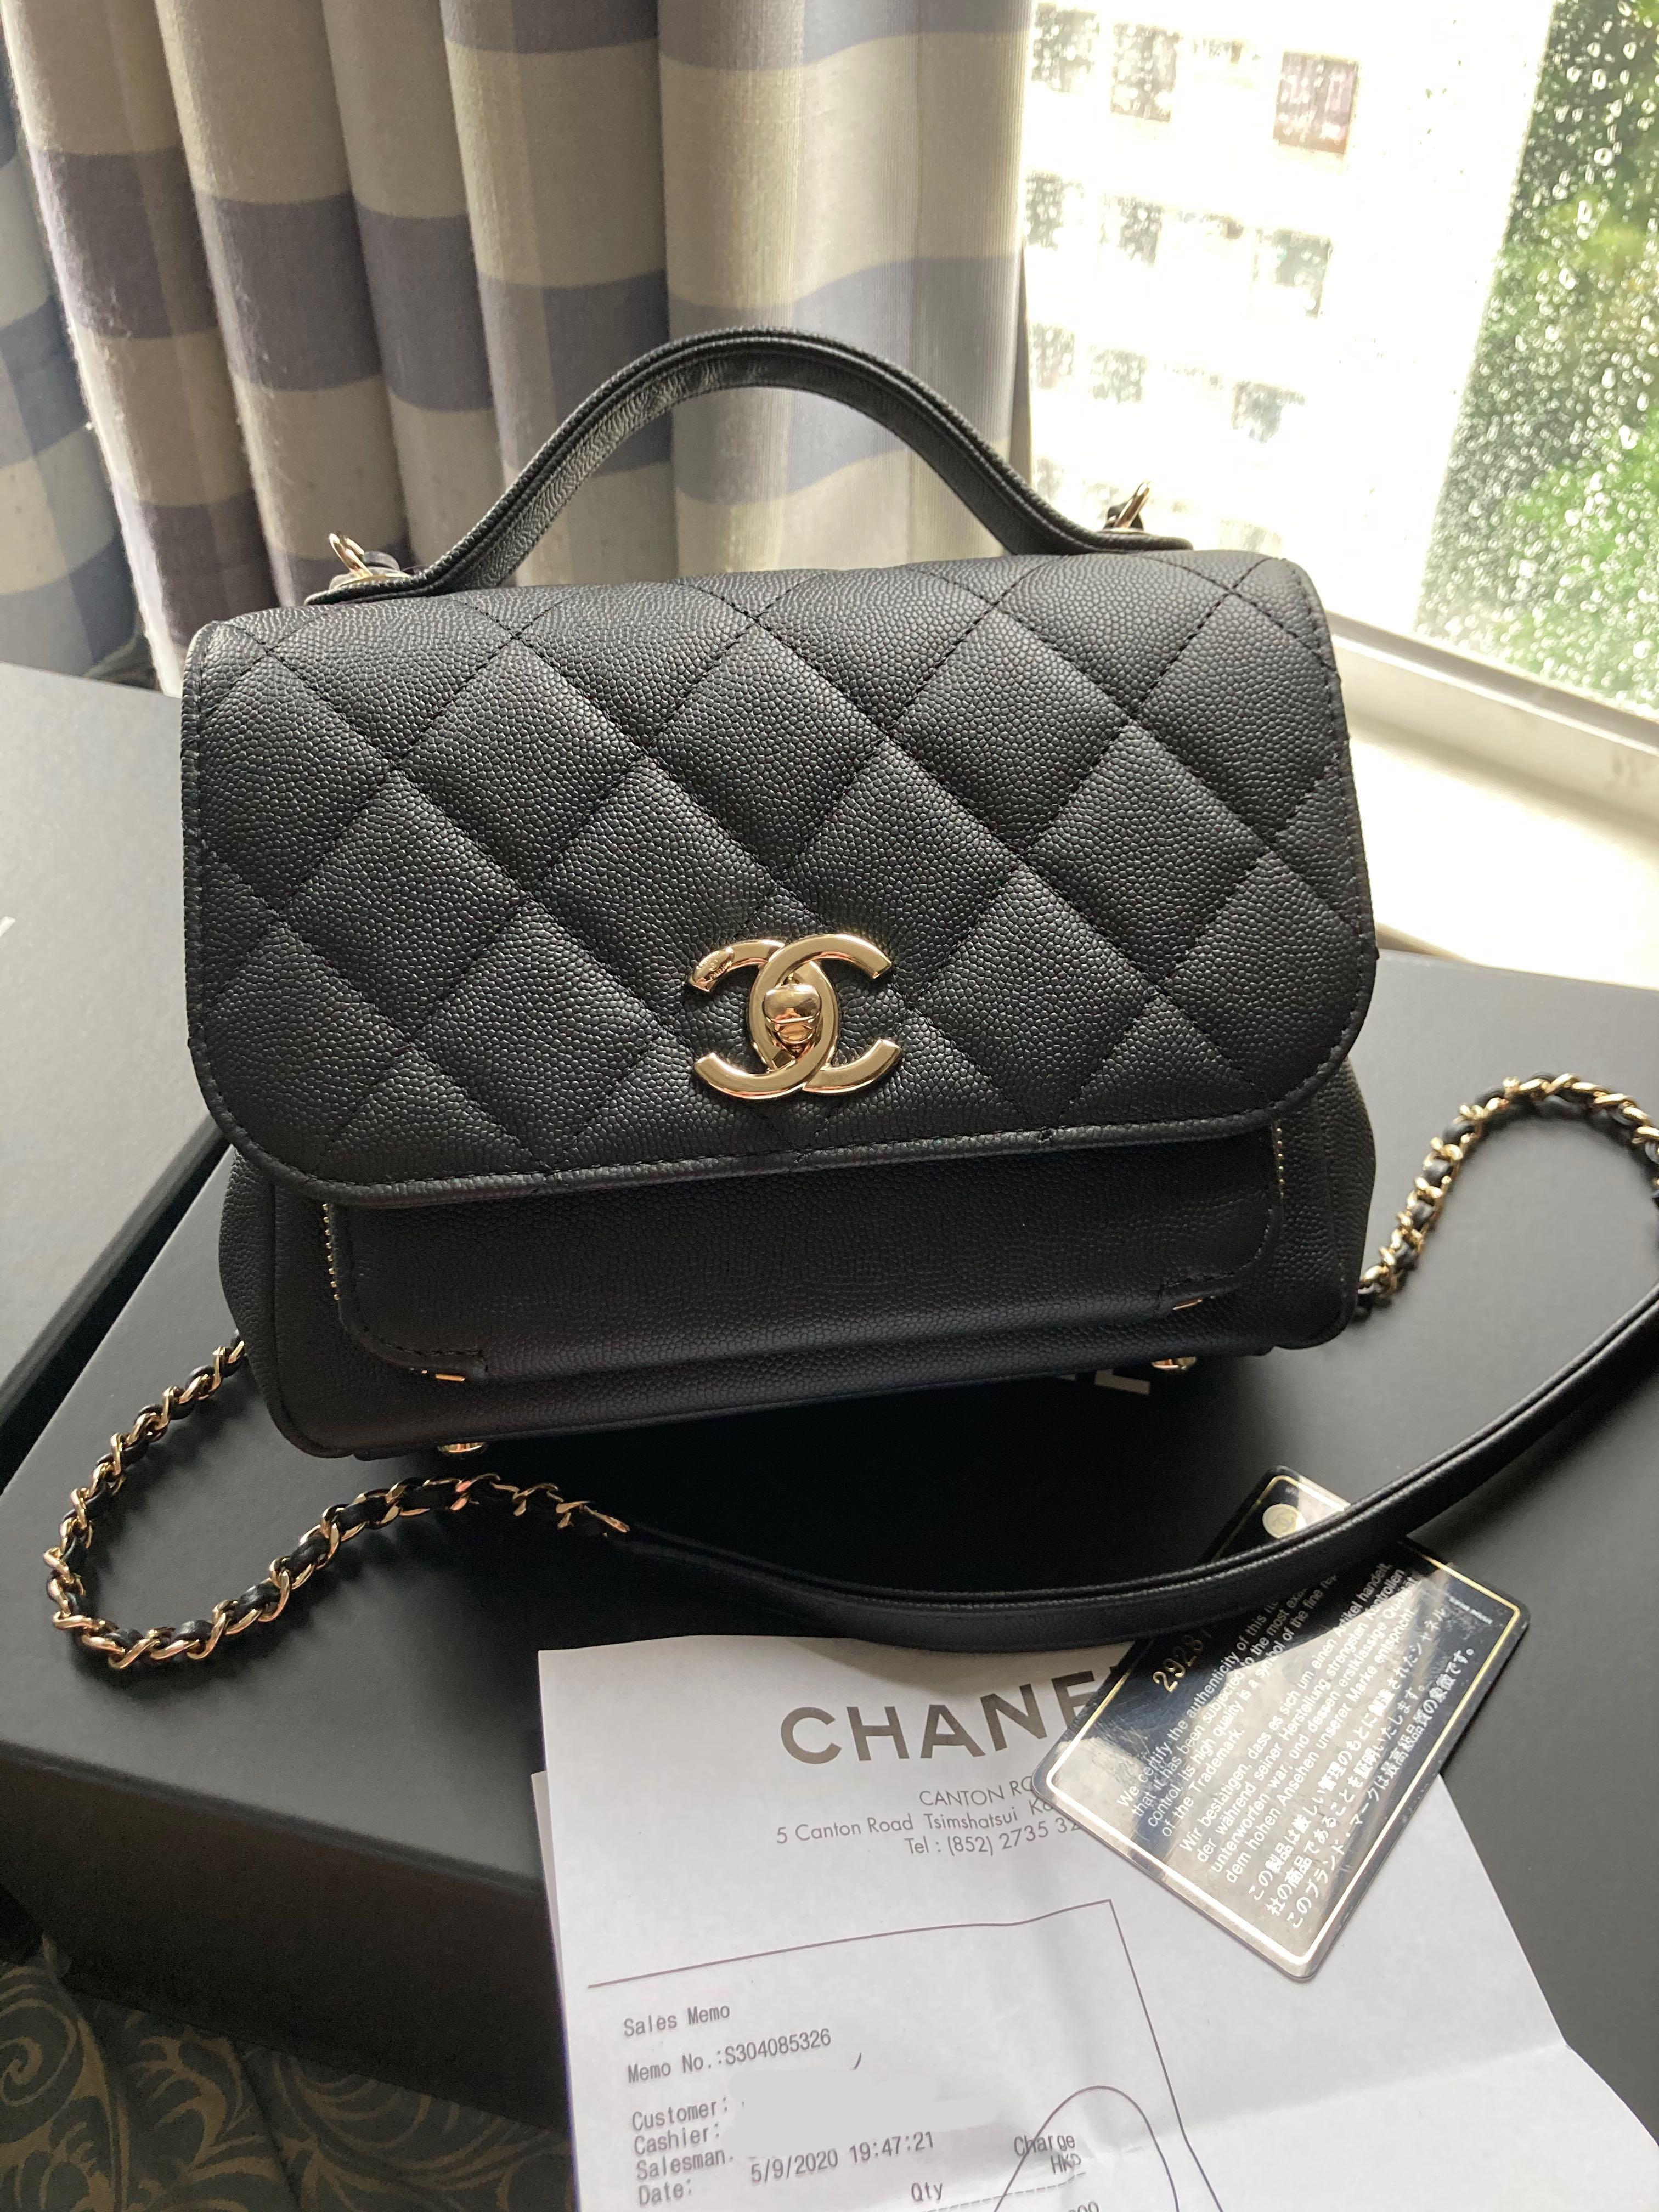 Chanel Business Affinity Bag  Bragmybag